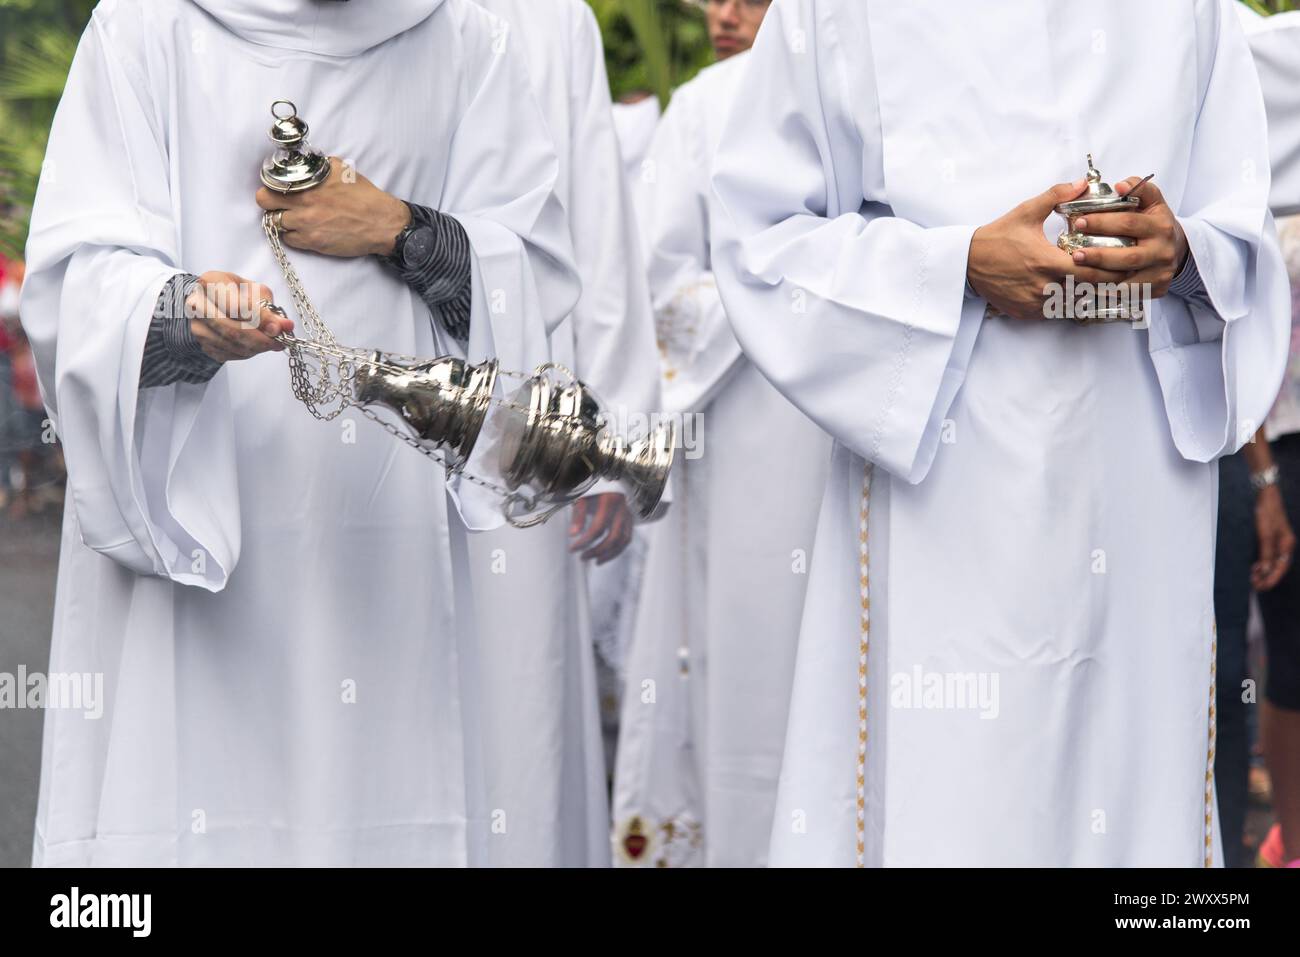 Salvador, Bahia, Brésil - 14 avril 2019 : des prêtres participent à la procession du dimanche des Rameaux dans la ville de Salvador, Bahia. Banque D'Images